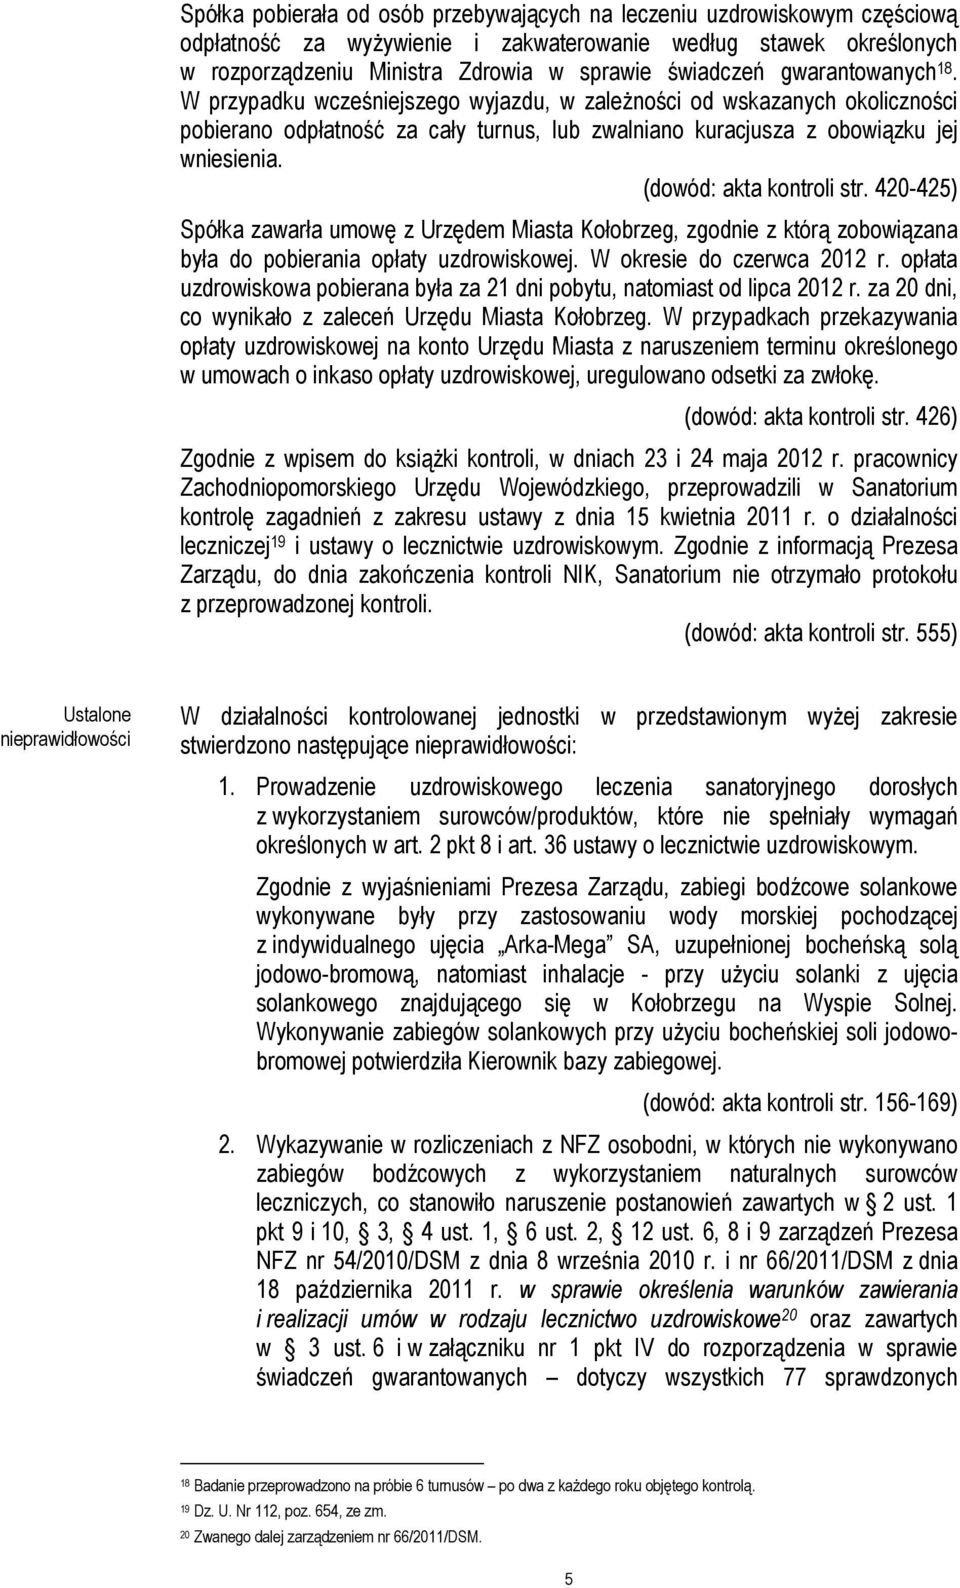 (dowód: akta kontroli str. 420-425) Spółka zawarła umowę z Urzędem Miasta Kołobrzeg, zgodnie z którą zobowiązana była do pobierania opłaty uzdrowiskowej. W okresie do czerwca 2012 r.